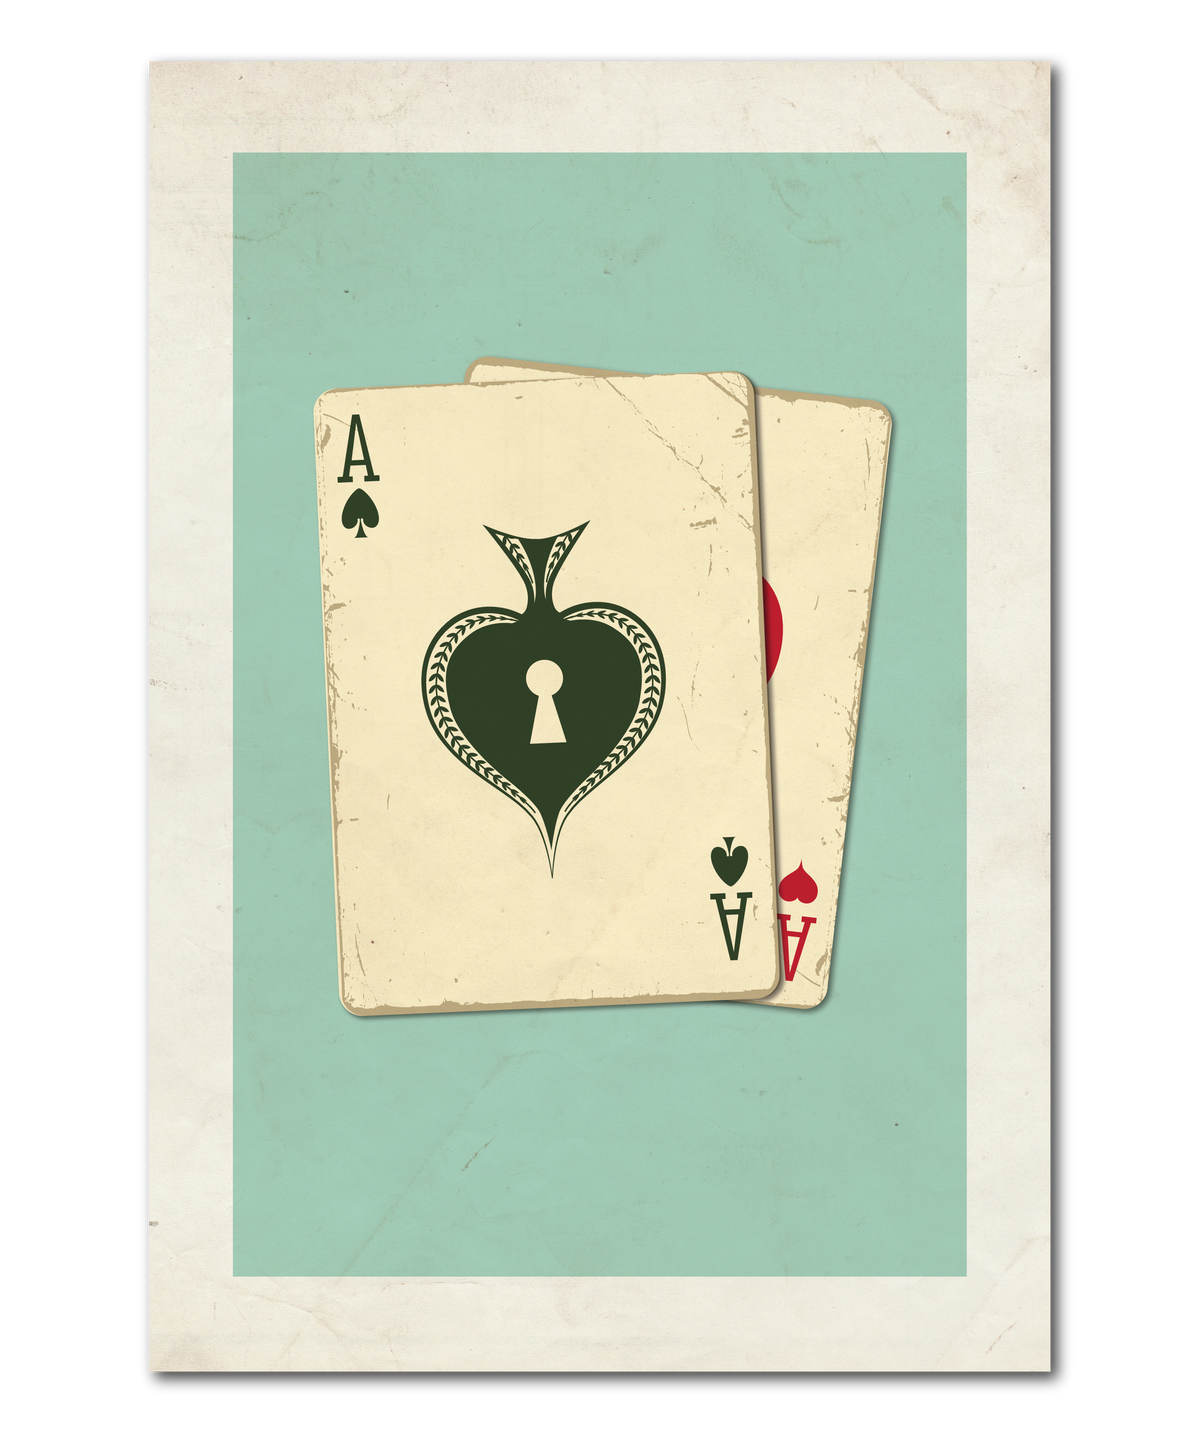 House of Cards Original Design Print